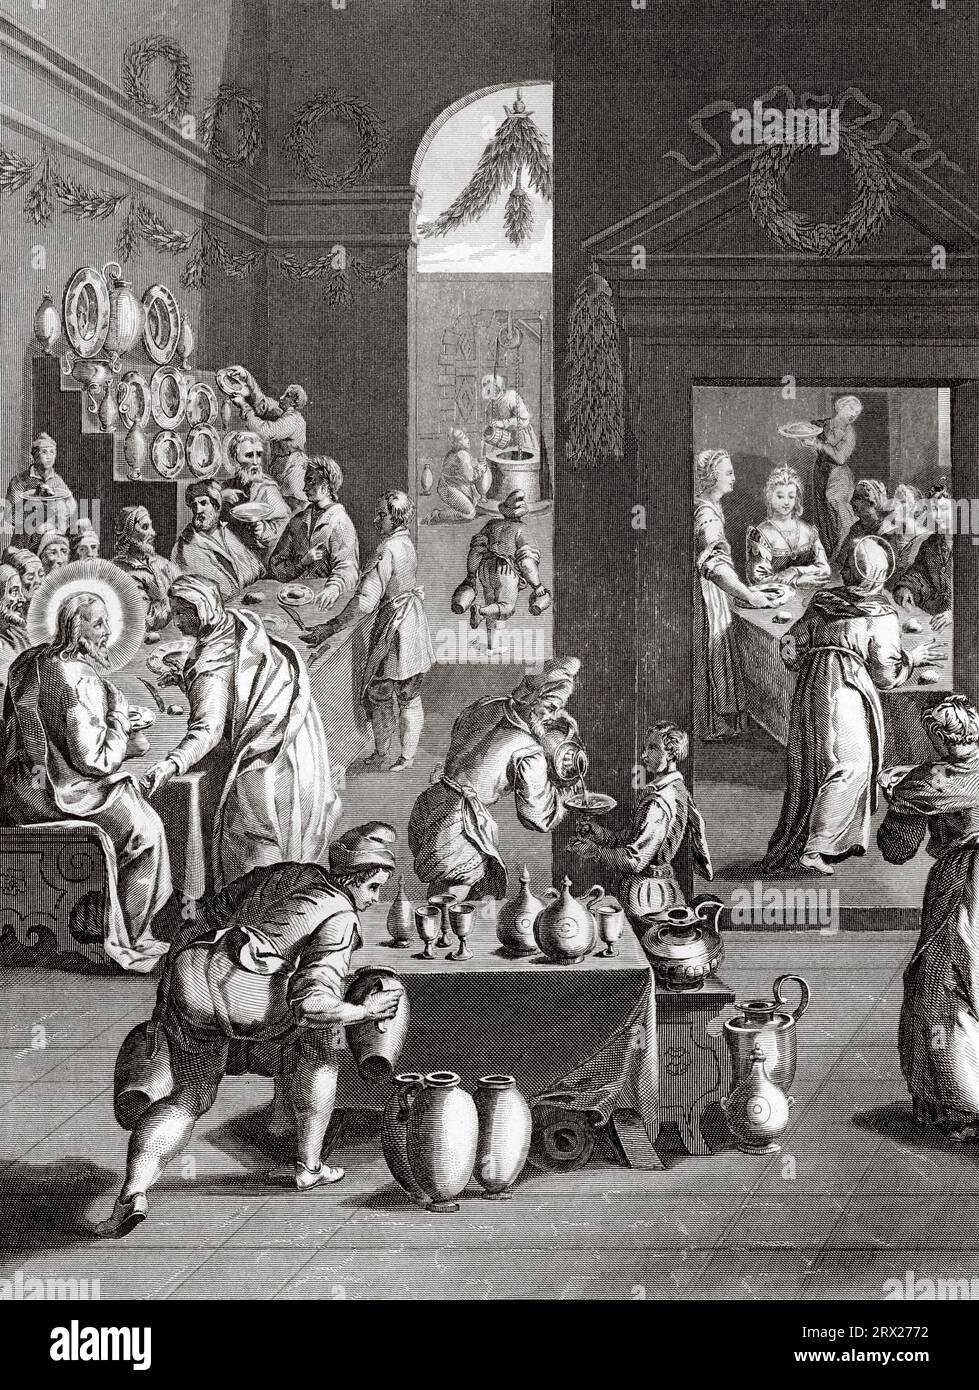 La festa nuziale a Cana. Illustrazione per la vita di nostro Signore Gesù Cristo scritta dai quattro evangelisti, 1853 Foto Stock